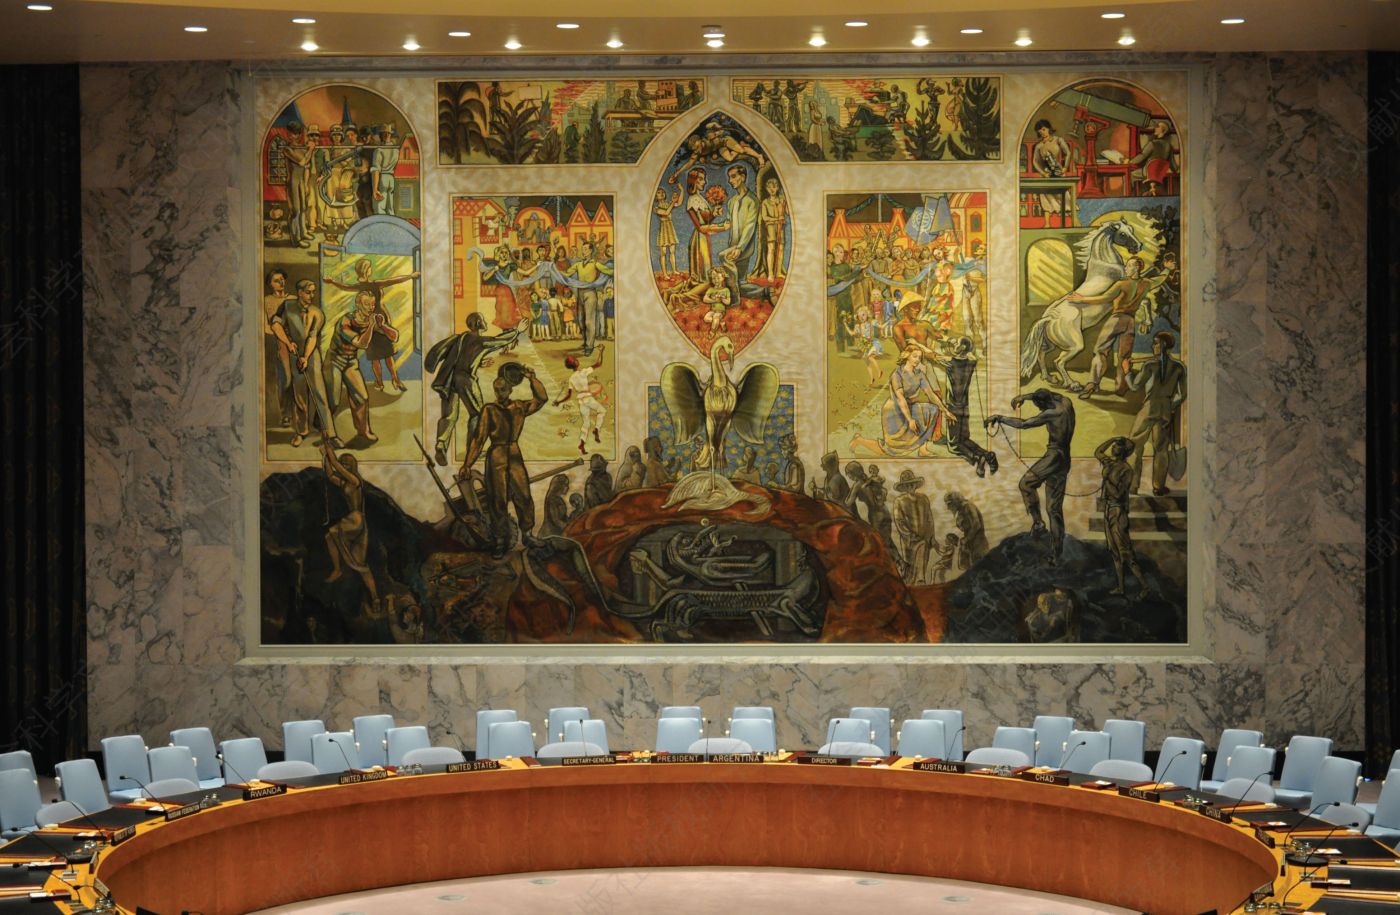 1-6.世界的重生：在联合国安理会大厅里，佩尔·克罗格（Per Krohg）的巨型壁画描绘了人们爬出二战的地狱、进入光明新世界的景象。在主席座位上方，一只凤凰从灰烬中涅槃。